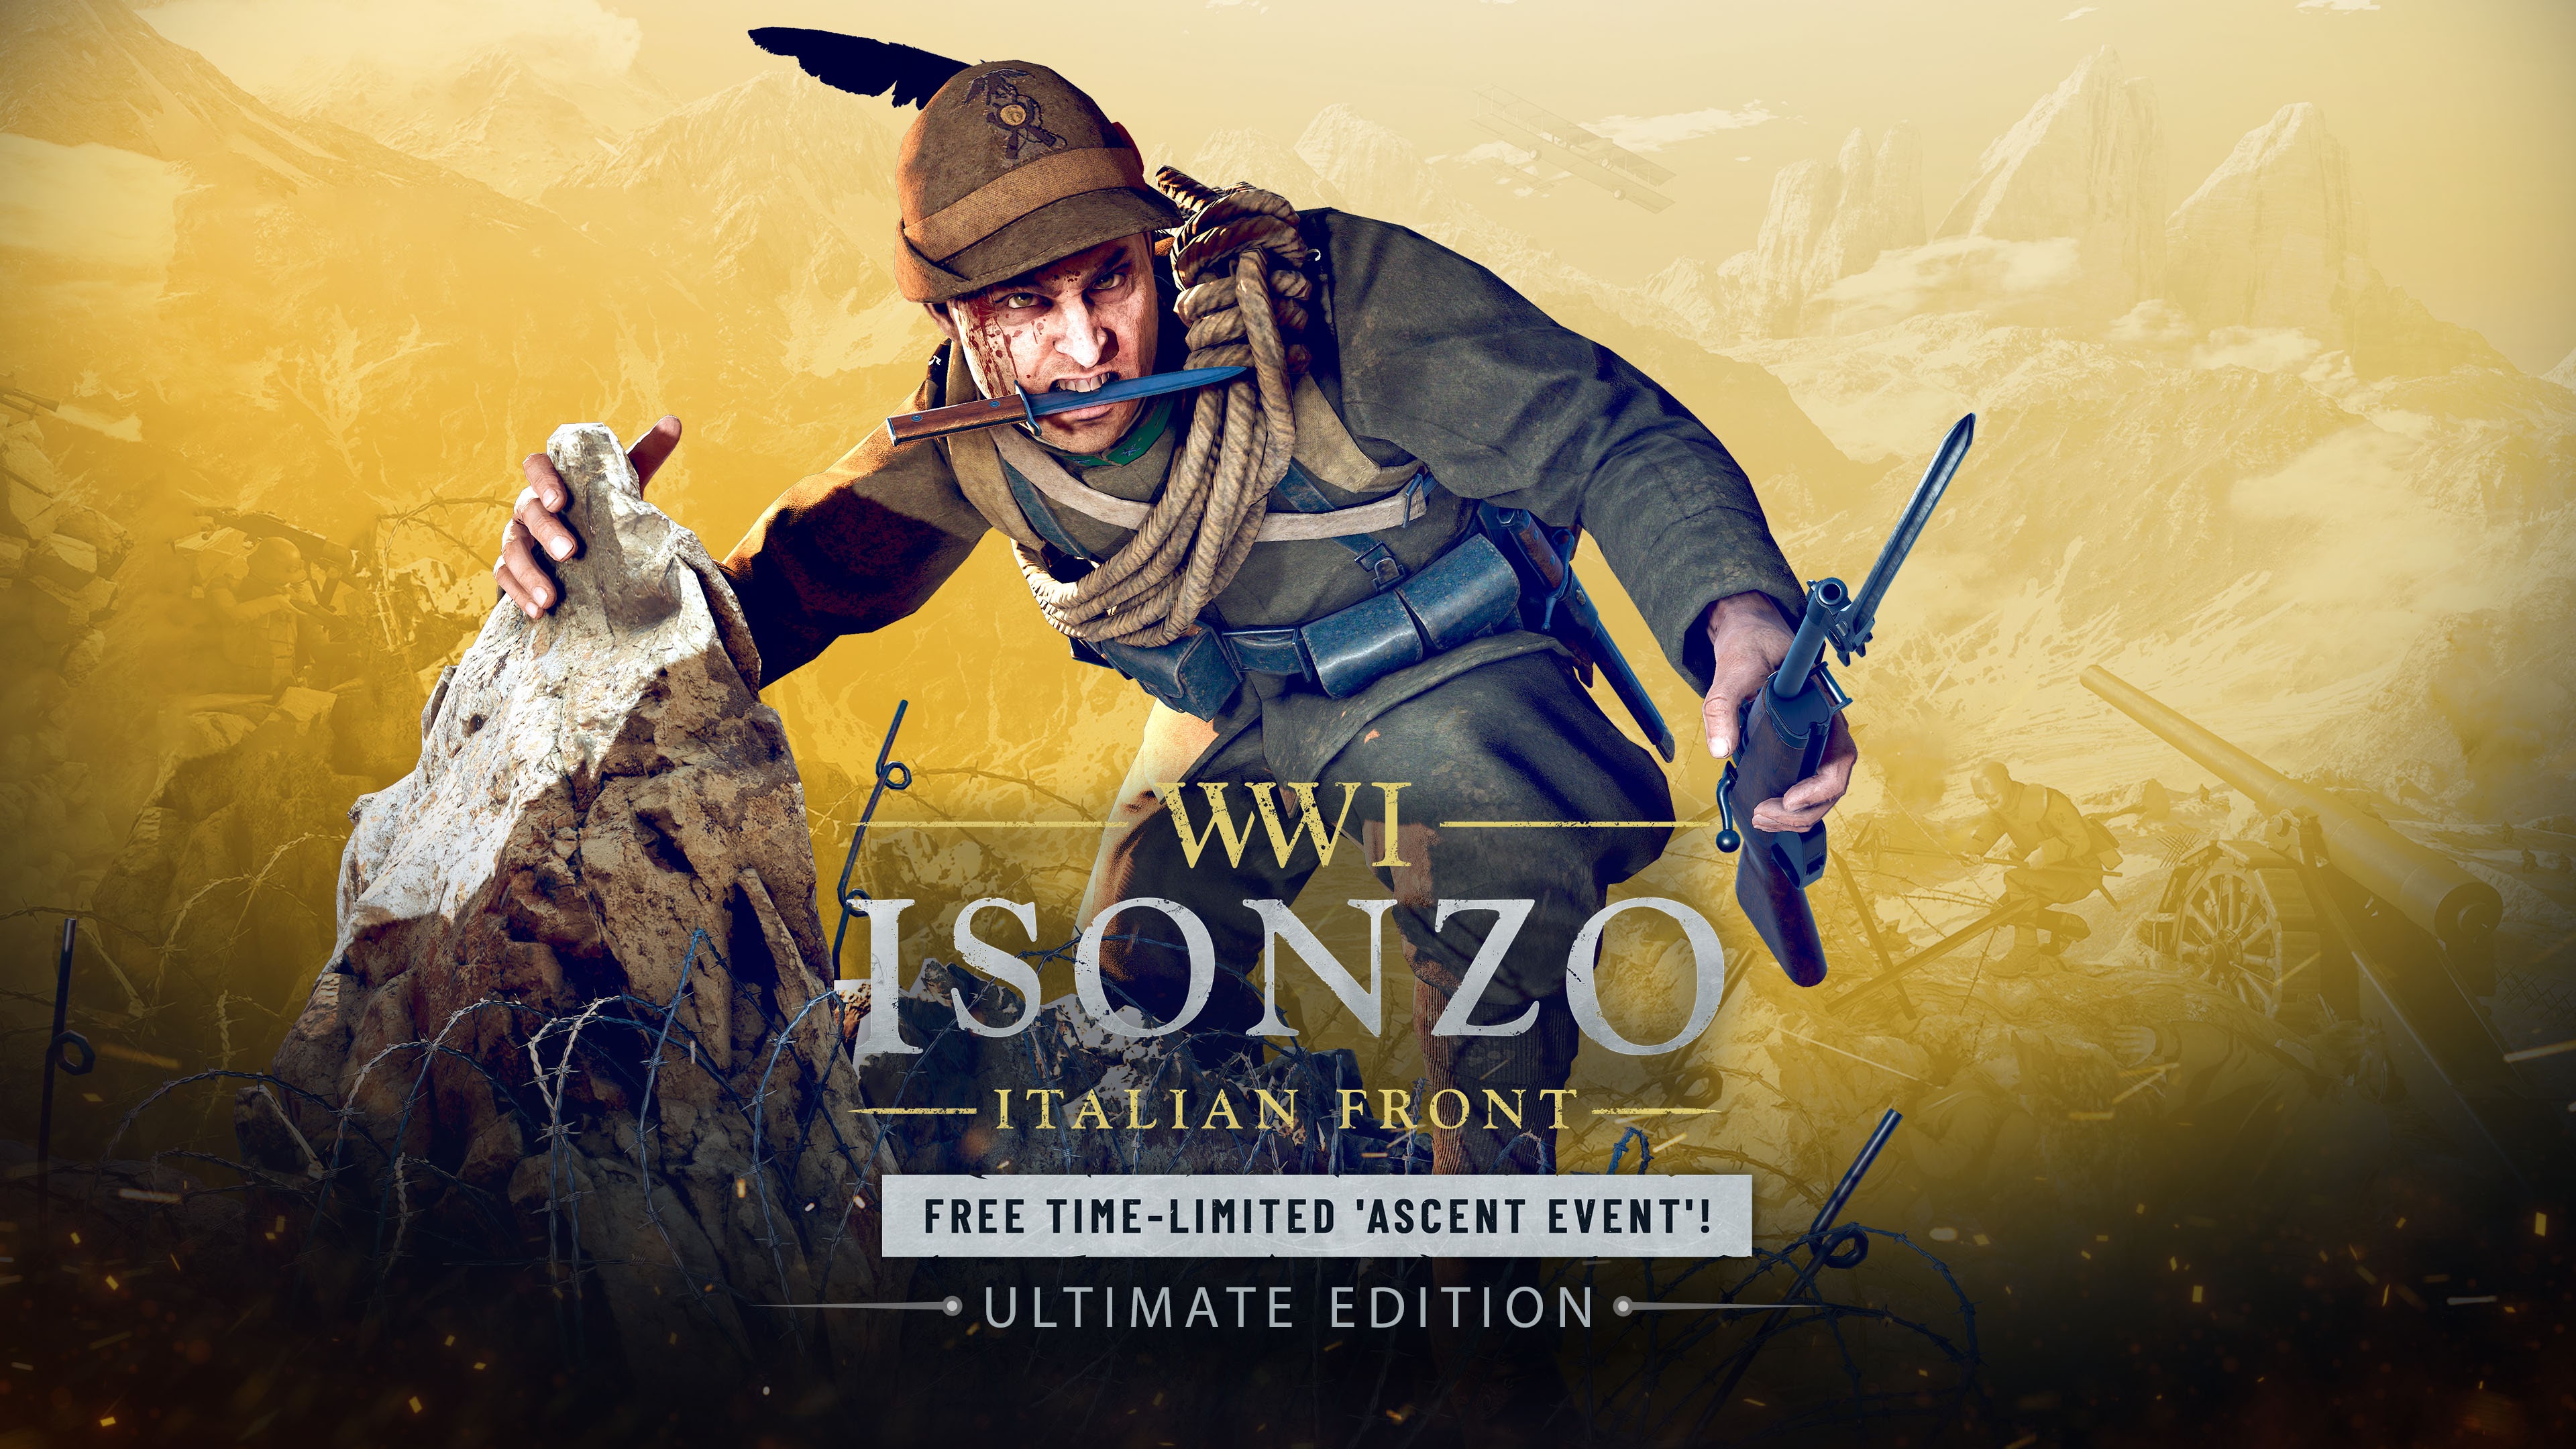 Isonzo: Ultimate Edition